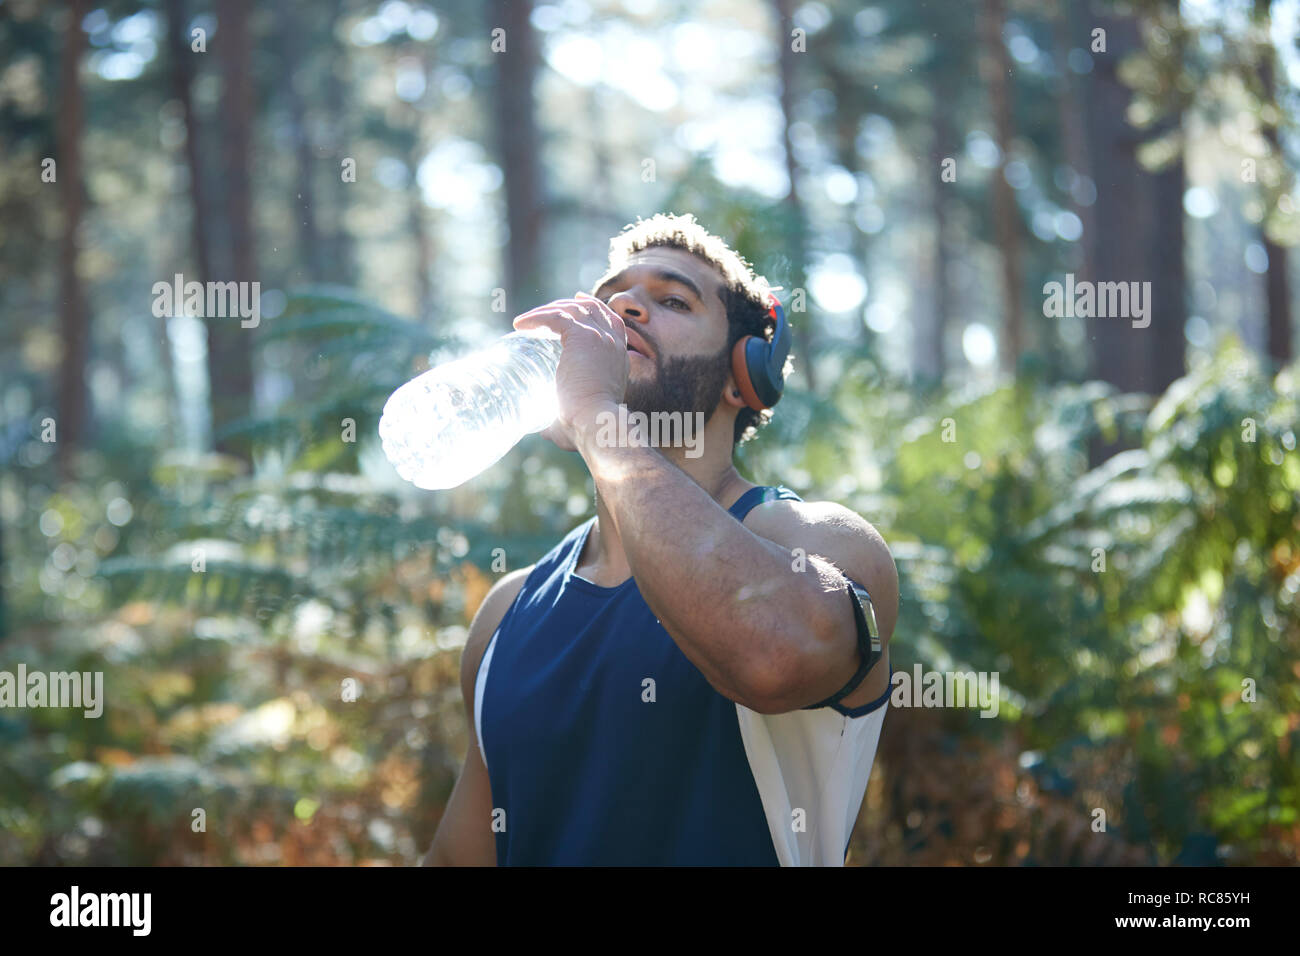 Male runner drinking bottled water in sunlit forest Stock Photo